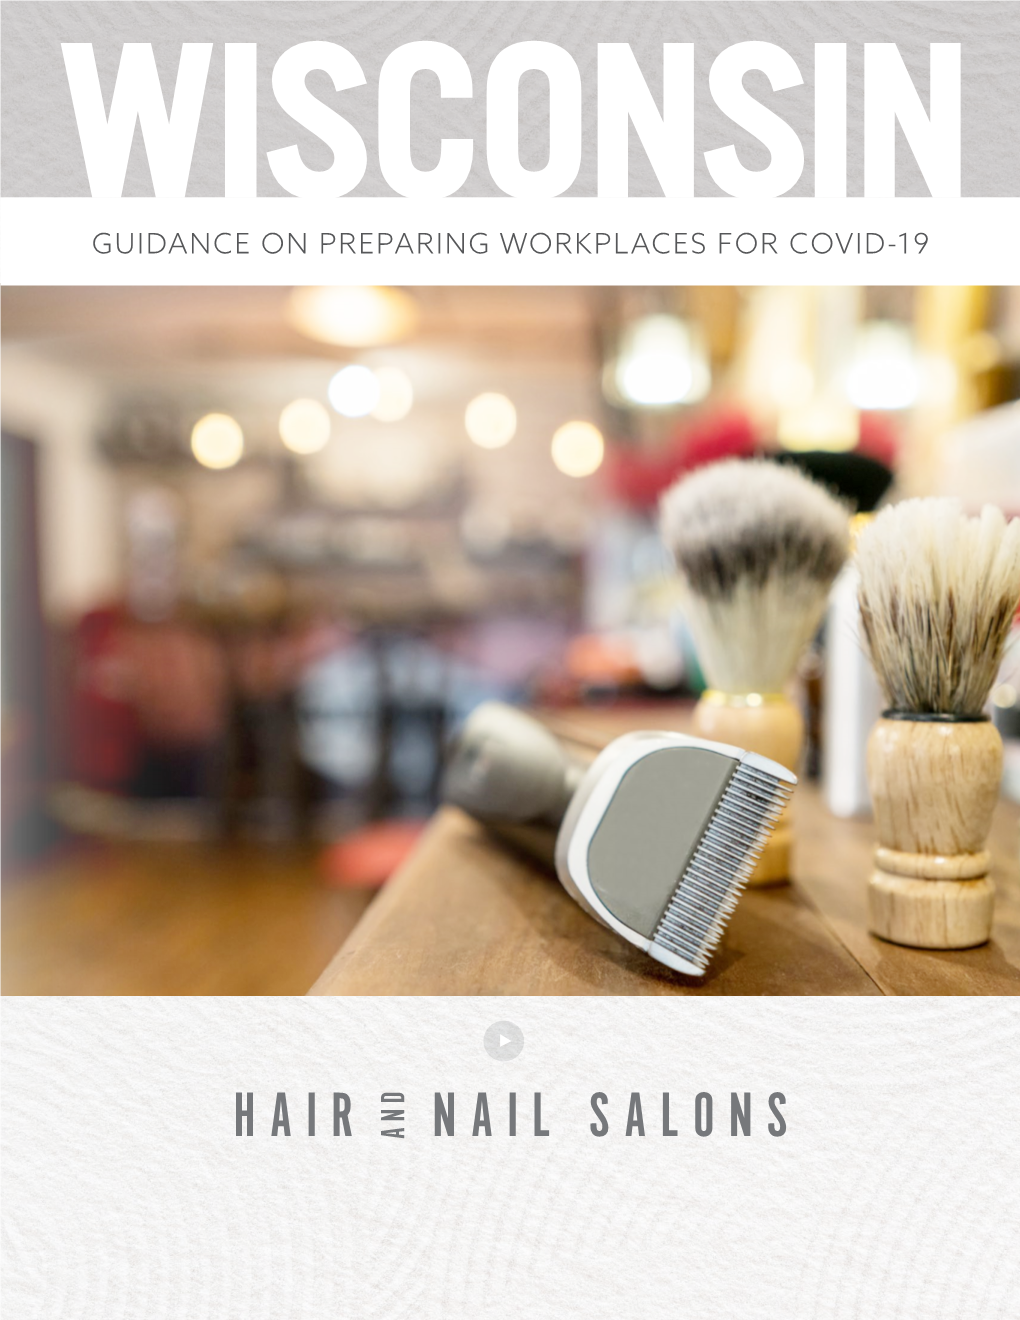 Hair Nail Salons